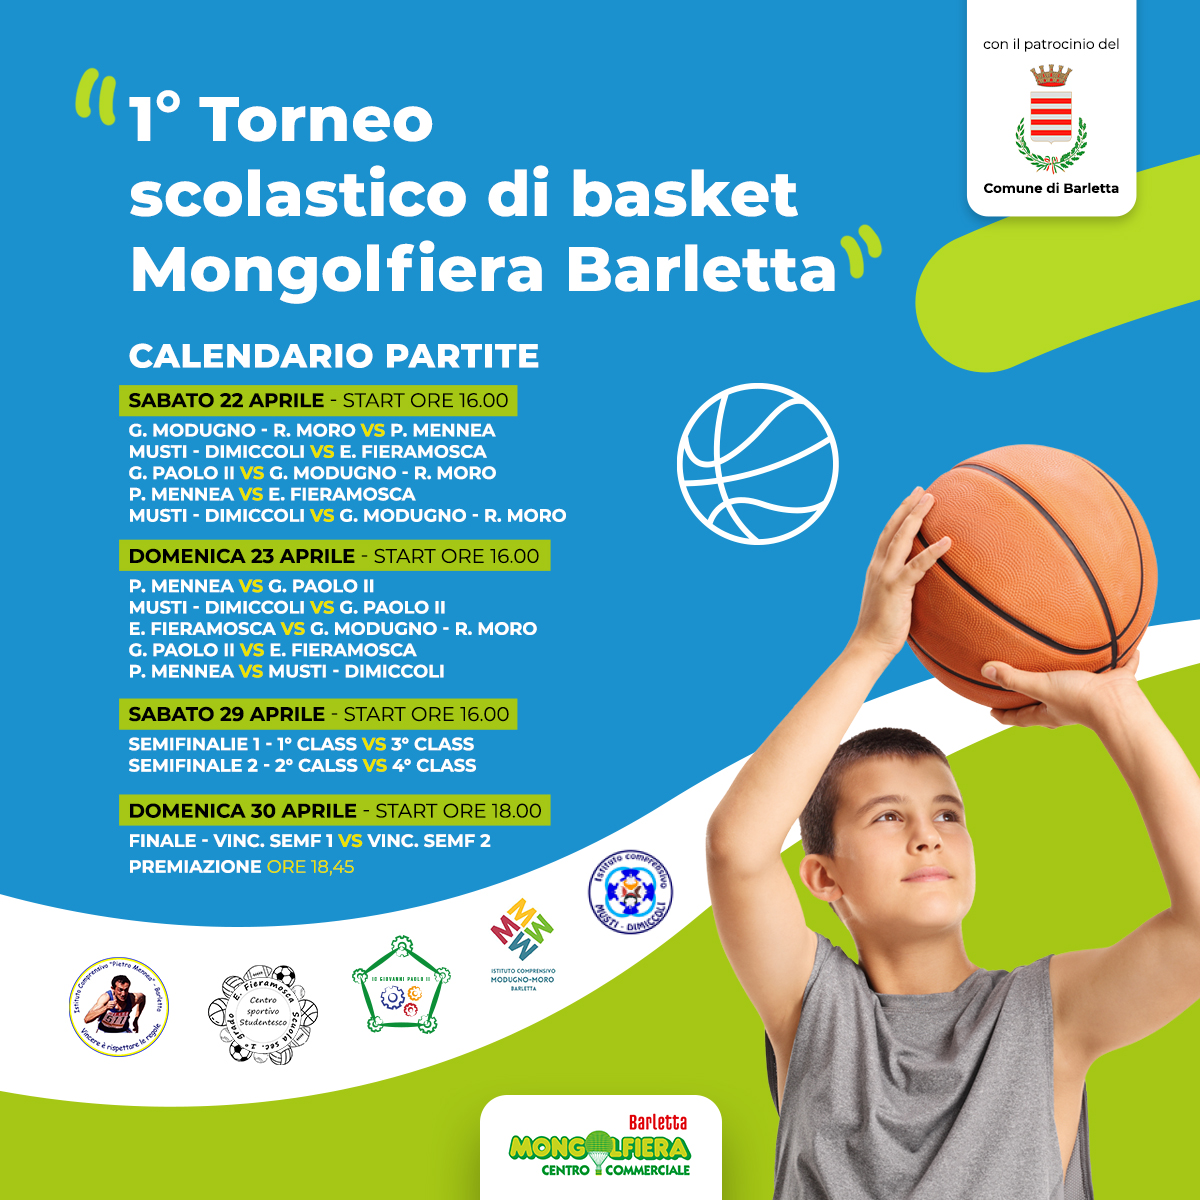 1° Torneo scolastico di basket Mongolfiera Barletta